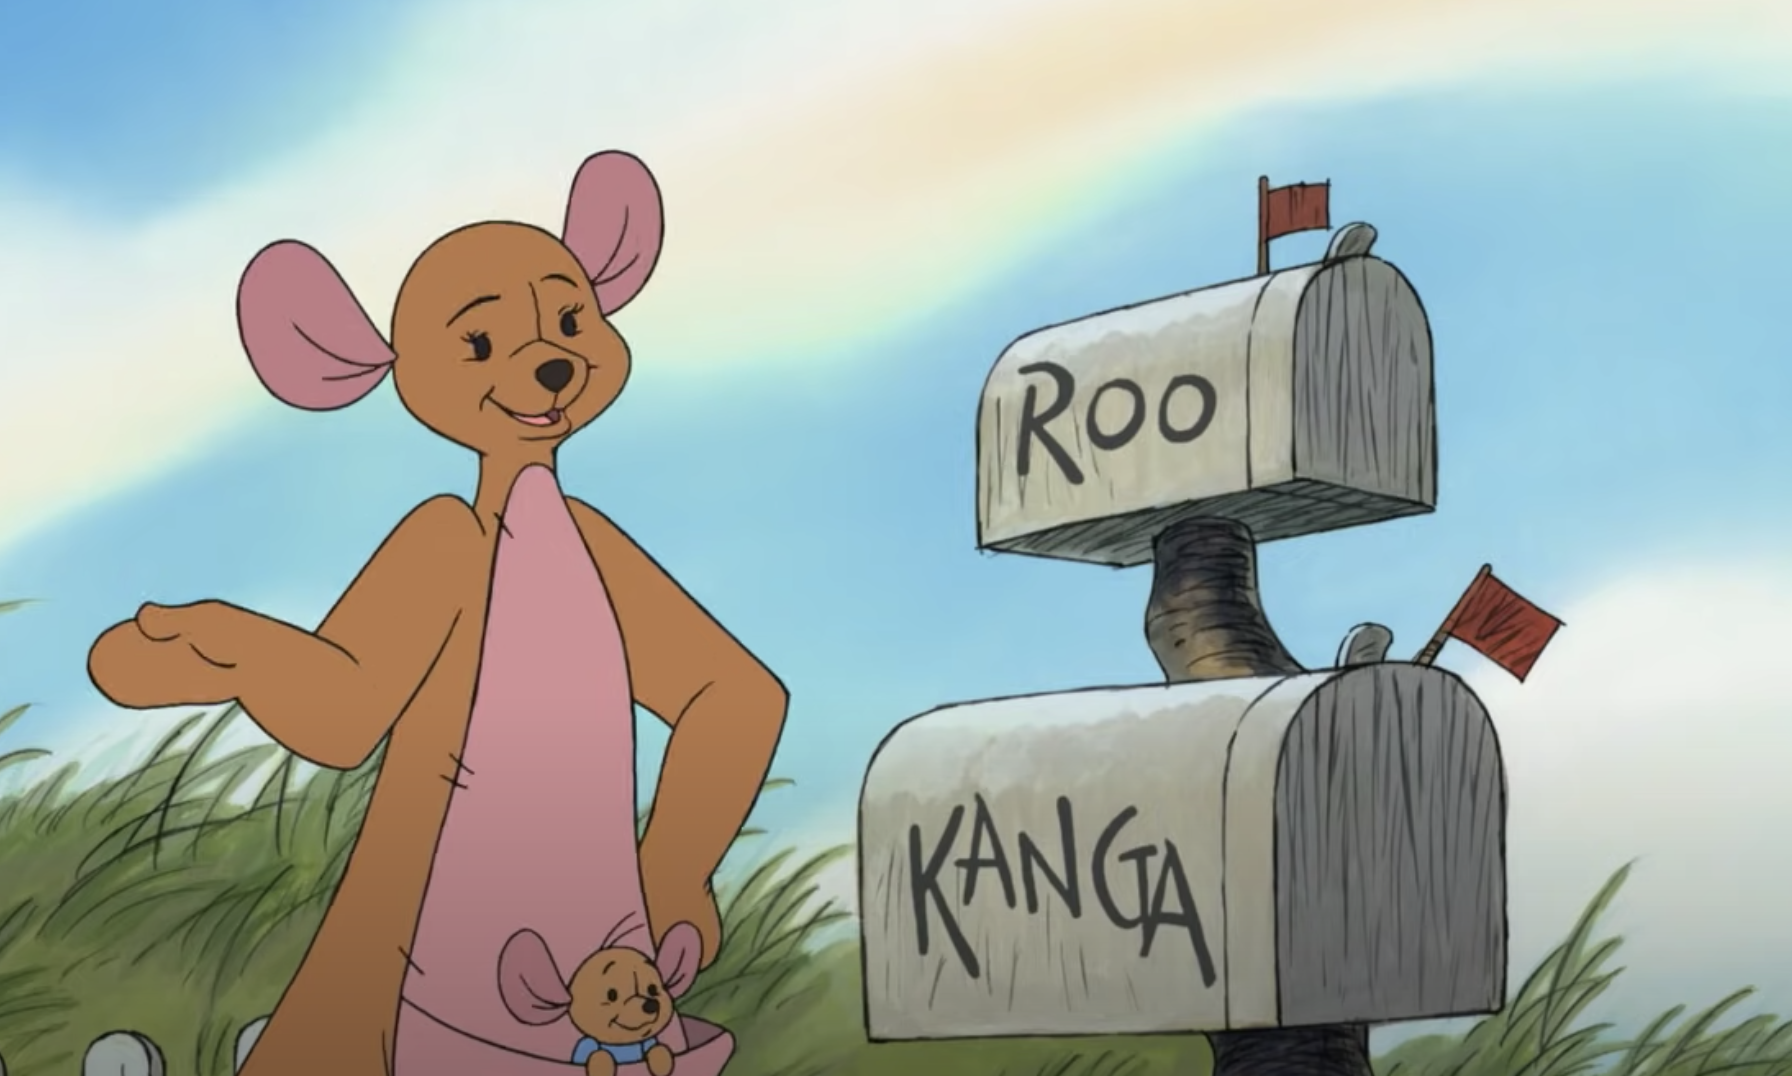 Winnie the Pooh, Kanga and Roo's combined name was "Kangaroo,&quo...